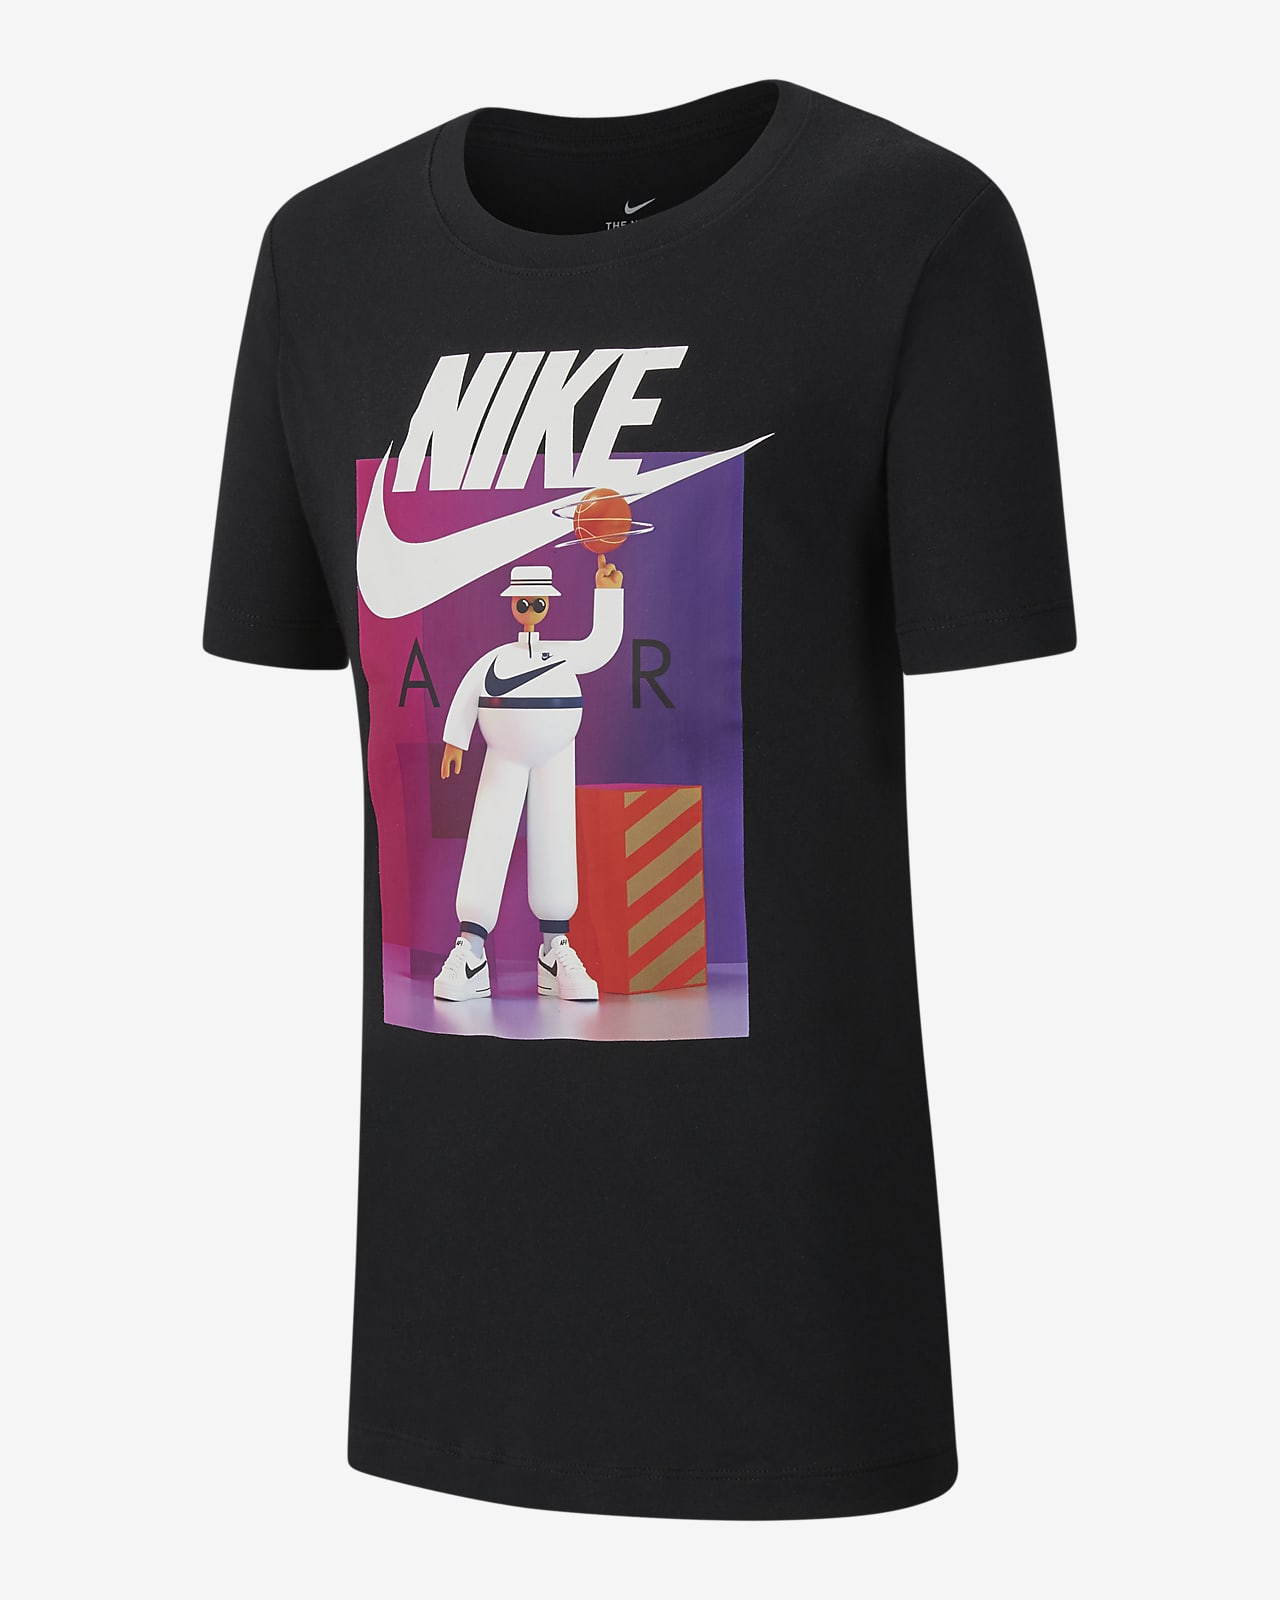 Nike Air T Shirt Junior Sale, 51% OFF 